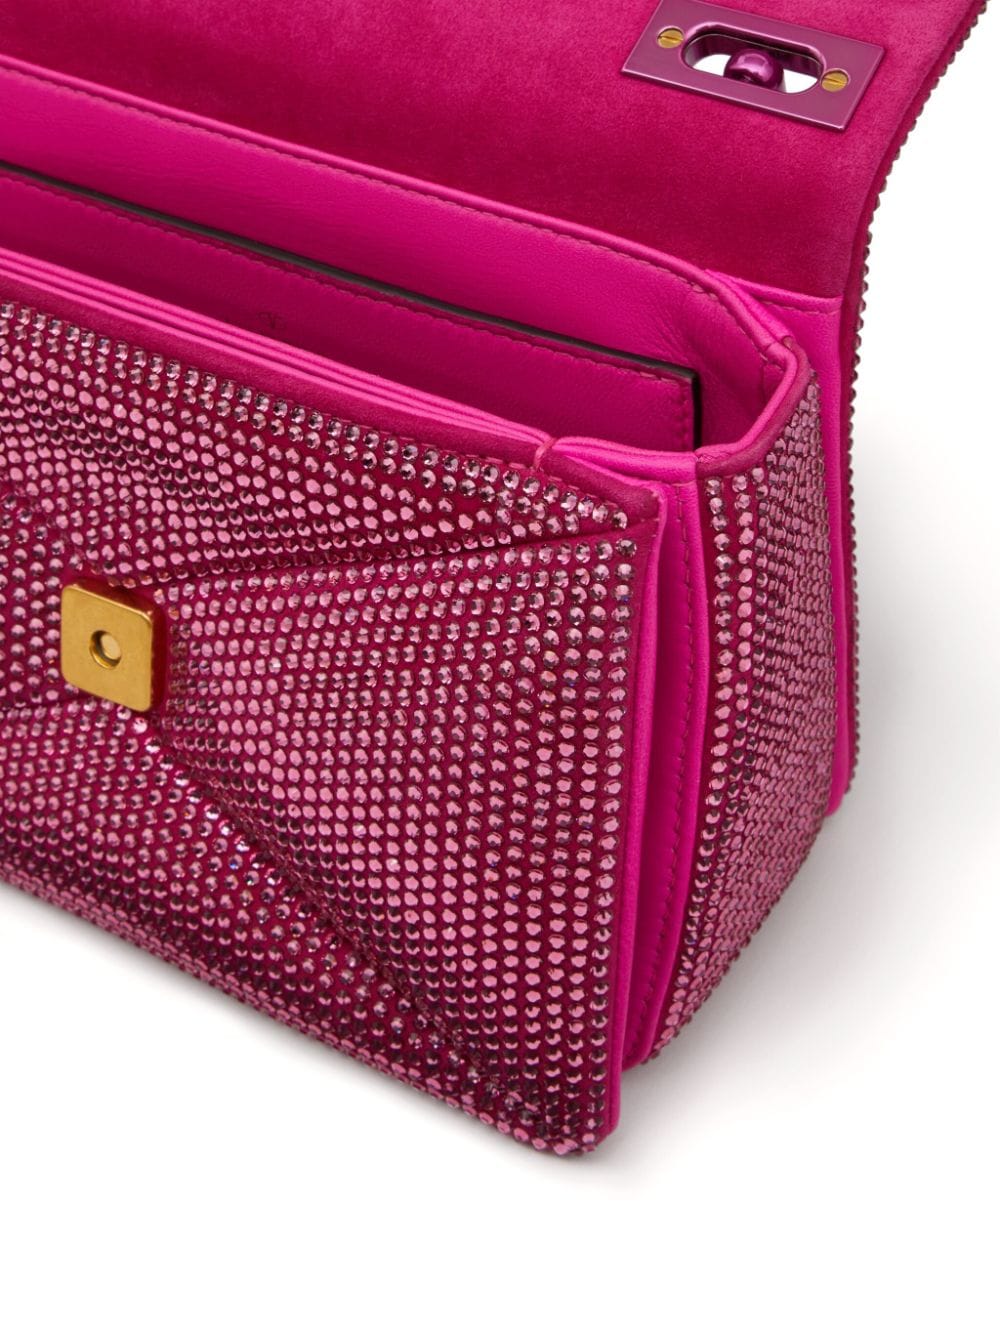 Valentino Garavani Small One Stud Crystal-Embellished Shoulder Bag